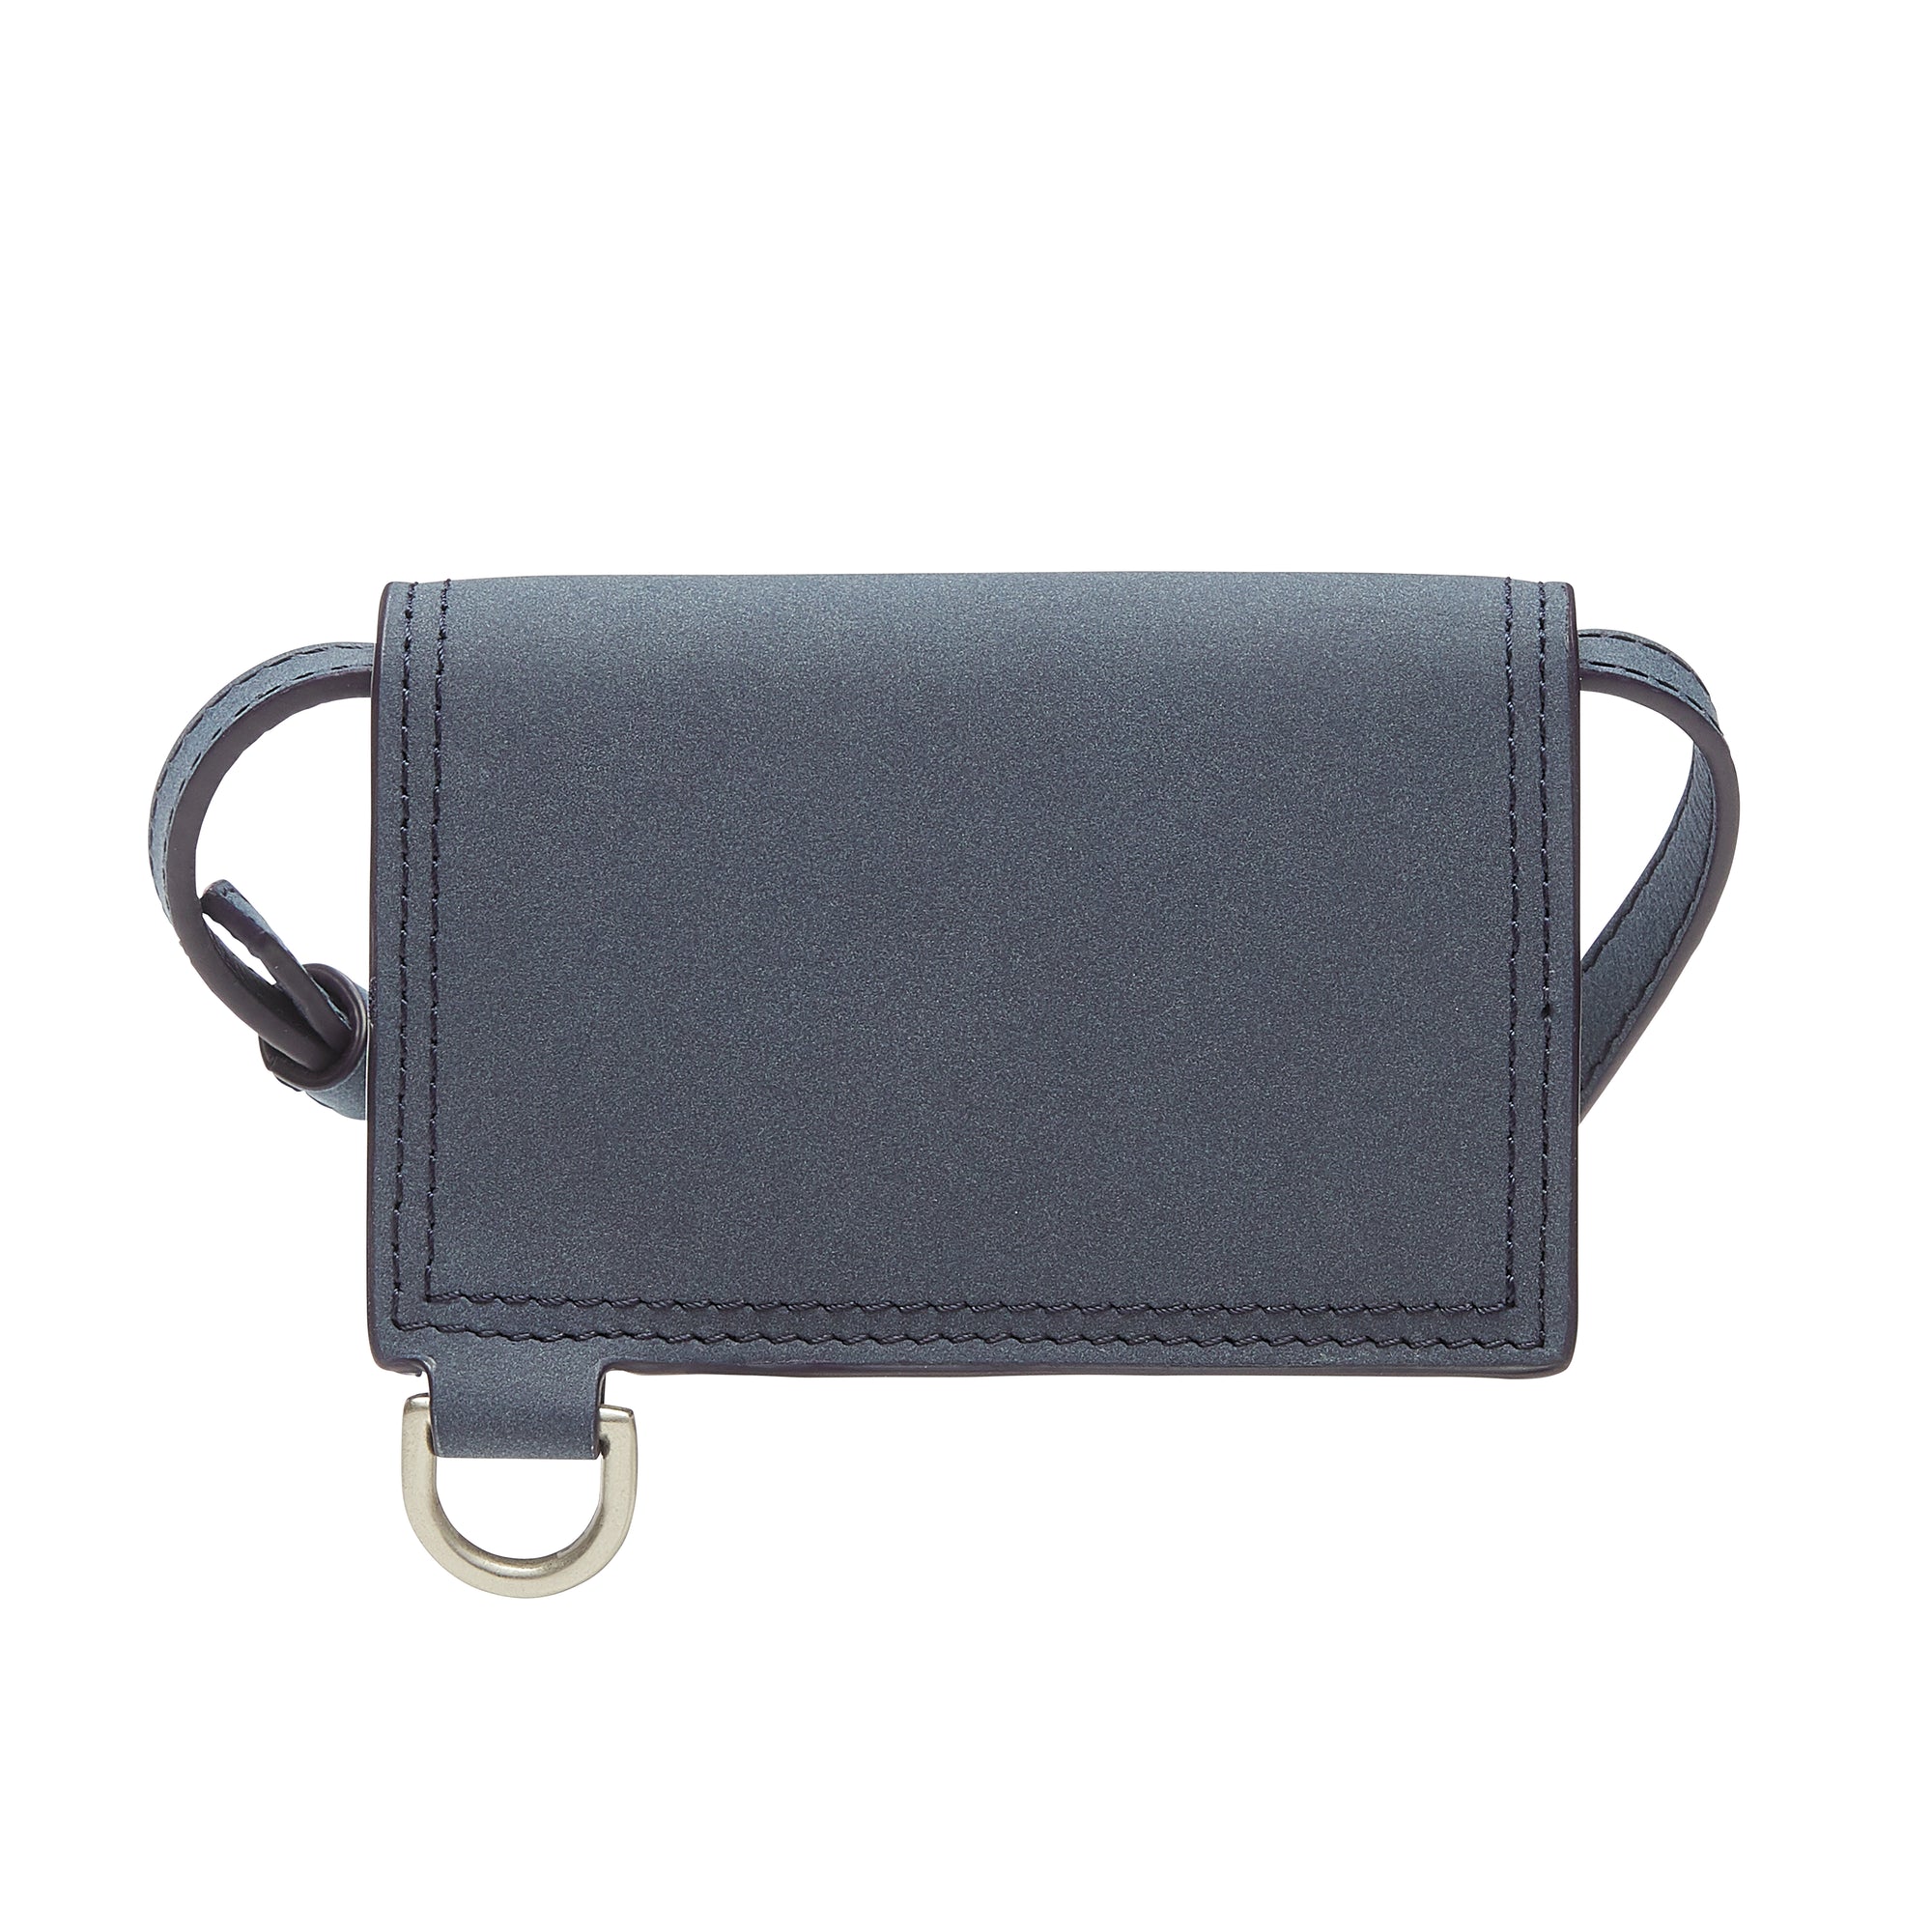 JACQUEMUS: Le Porte Azur leather bag - Black  Jacquemus shoulder bag  216SL0043000 online at